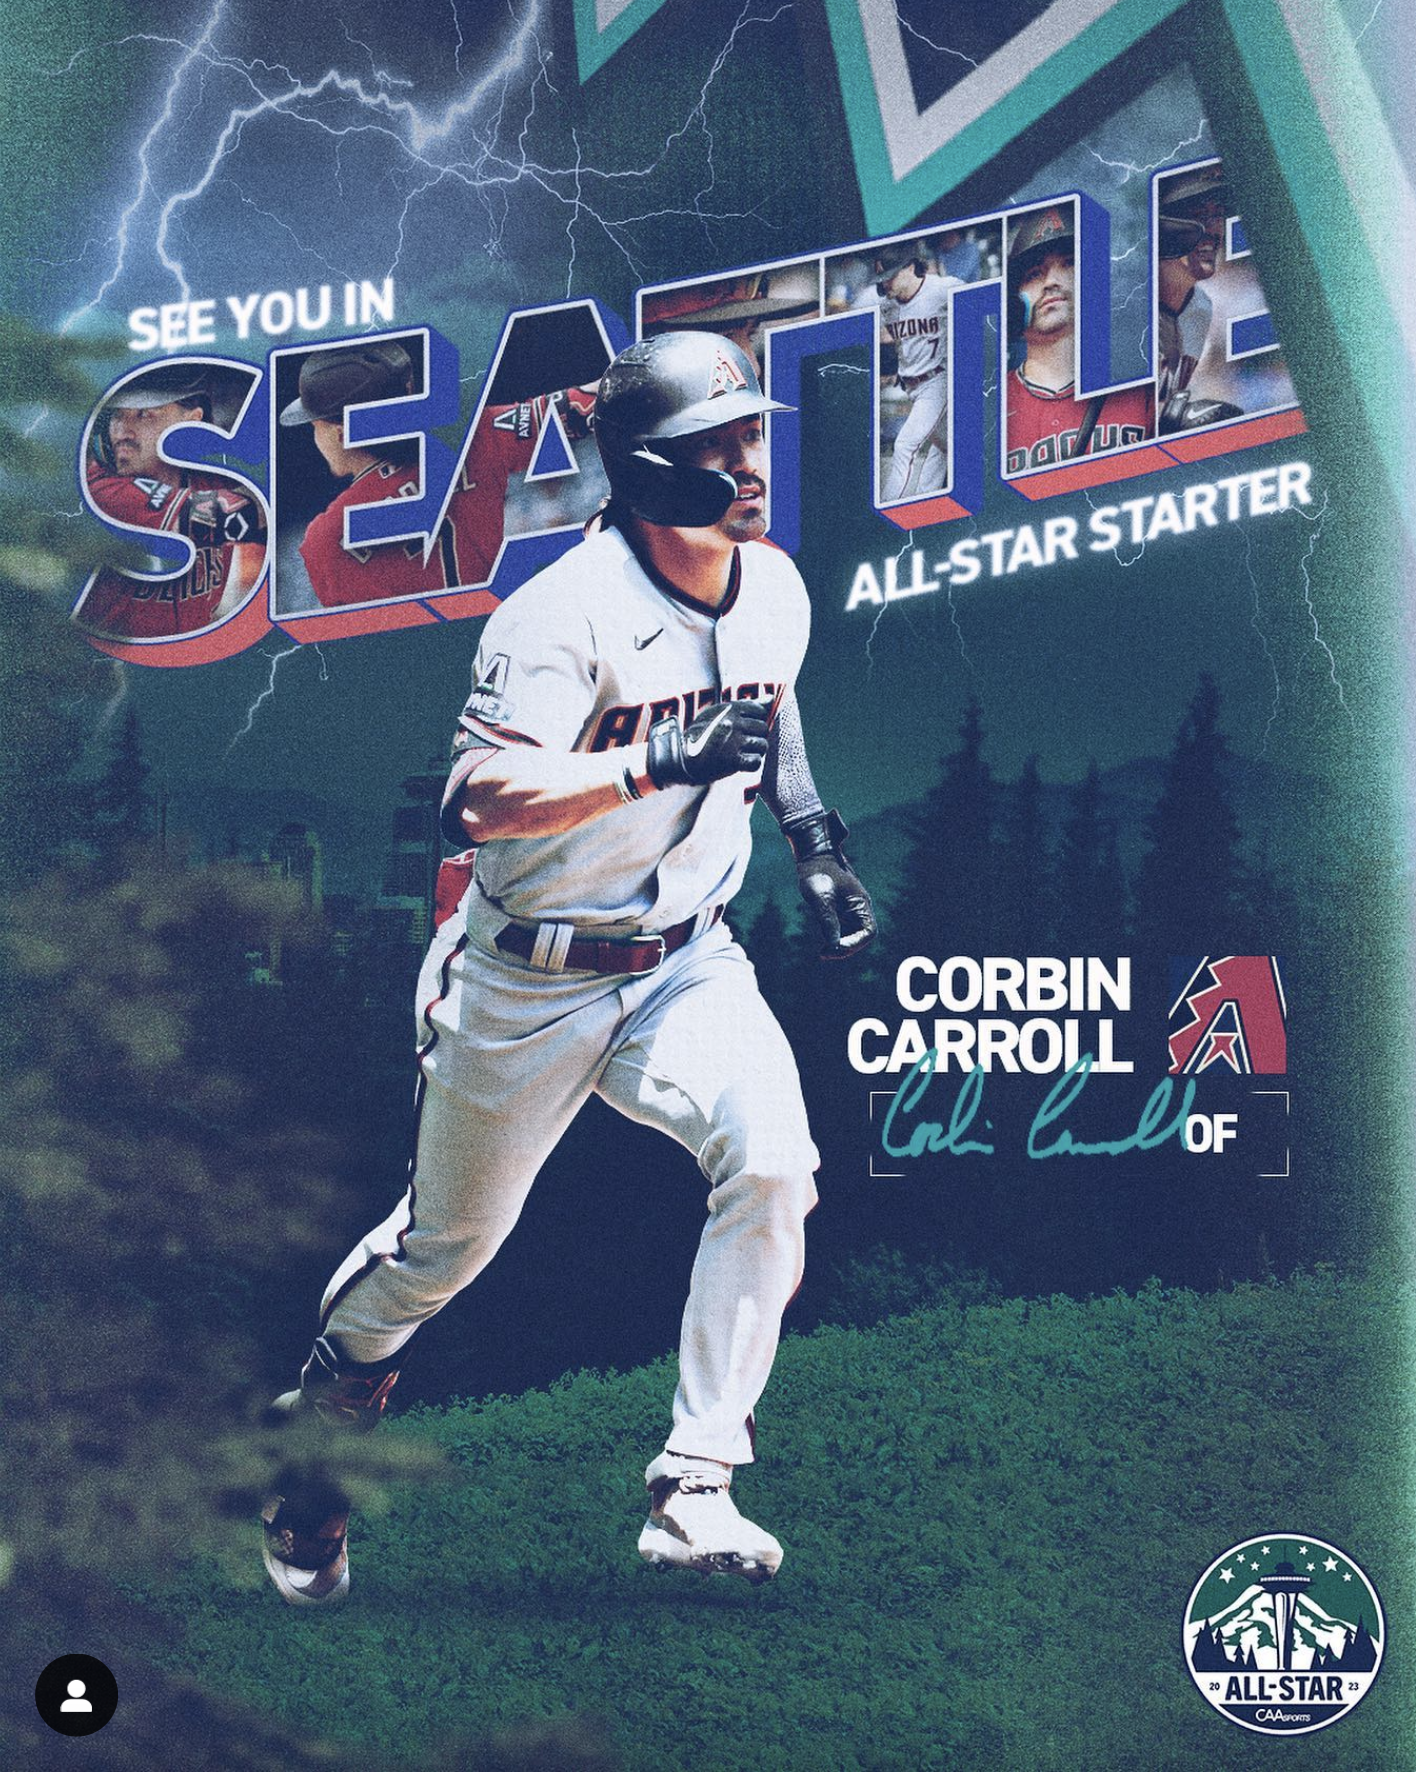 Corbin Carroll Named Starter for All-Star Game - Sports